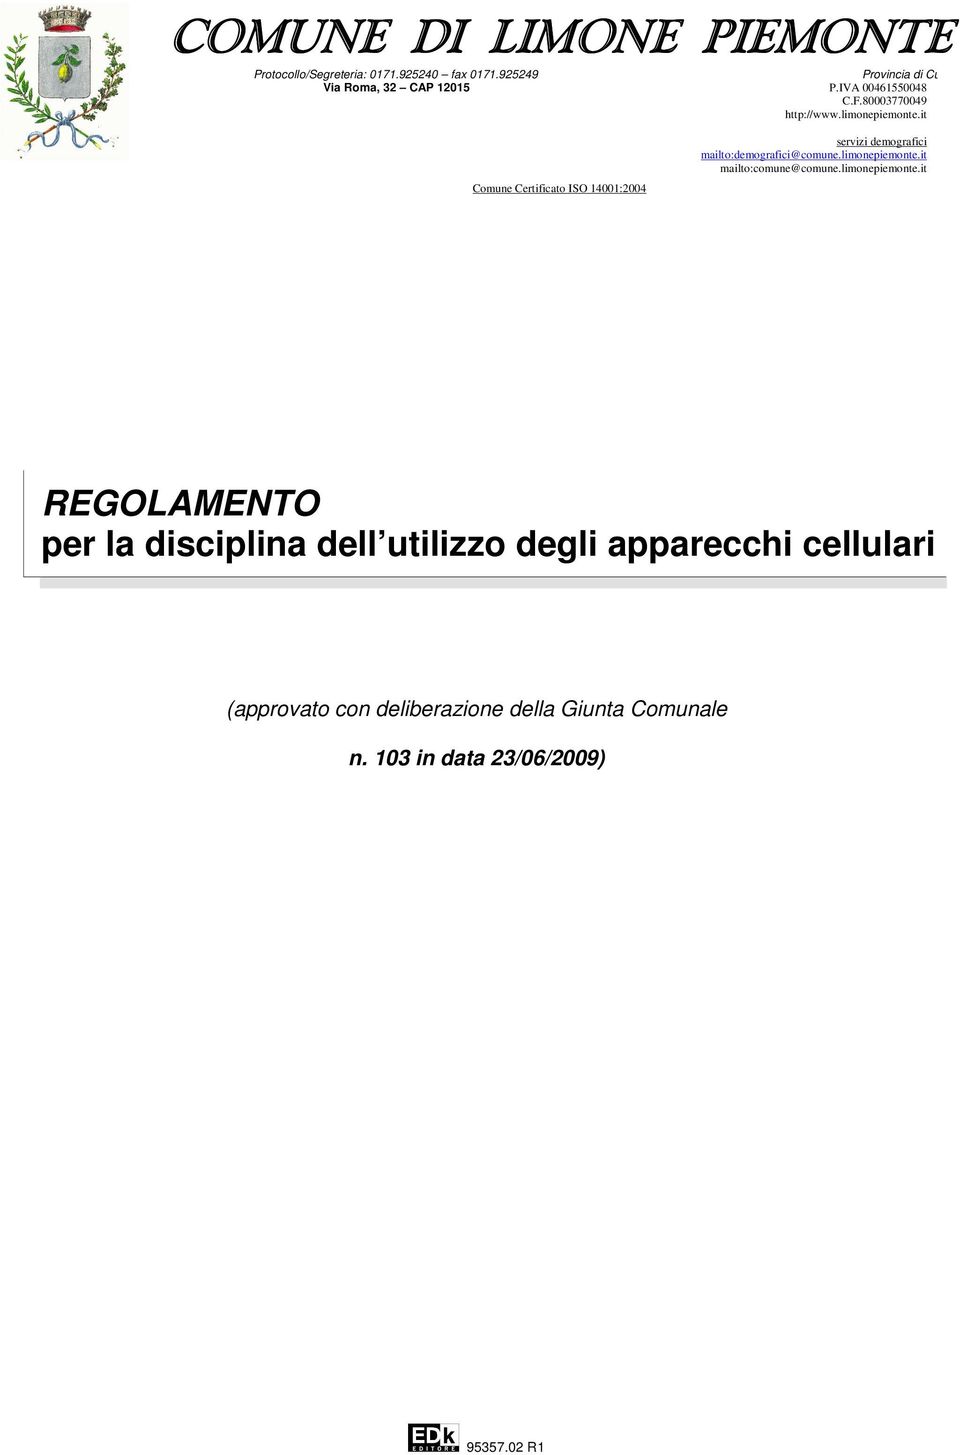 it Comune Certificato ISO 14001:2004 servizi demografici mailto:demografici@comune.limonepiemonte.